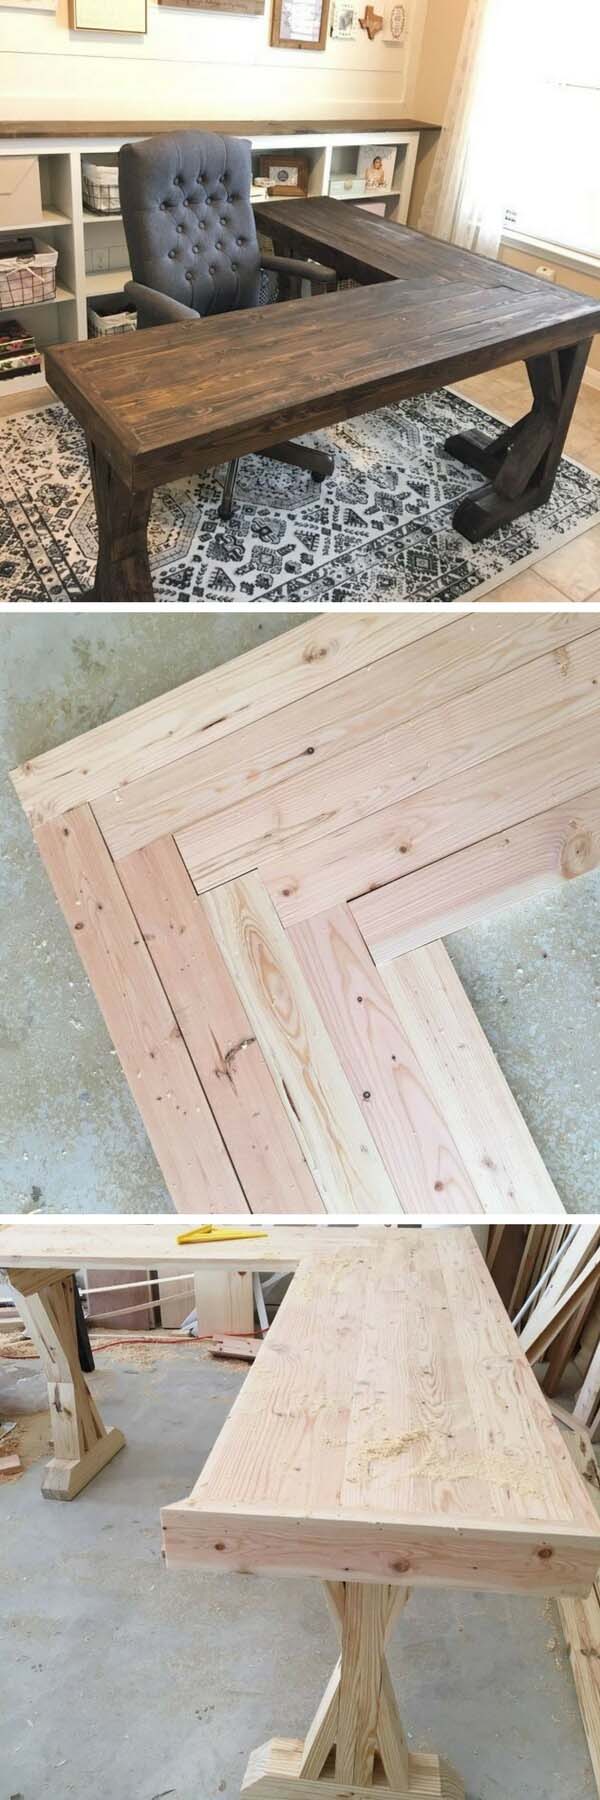 DIY L-Shaped Farmhouse Wood Desk #diy #wood #crafts #decorhomeideas